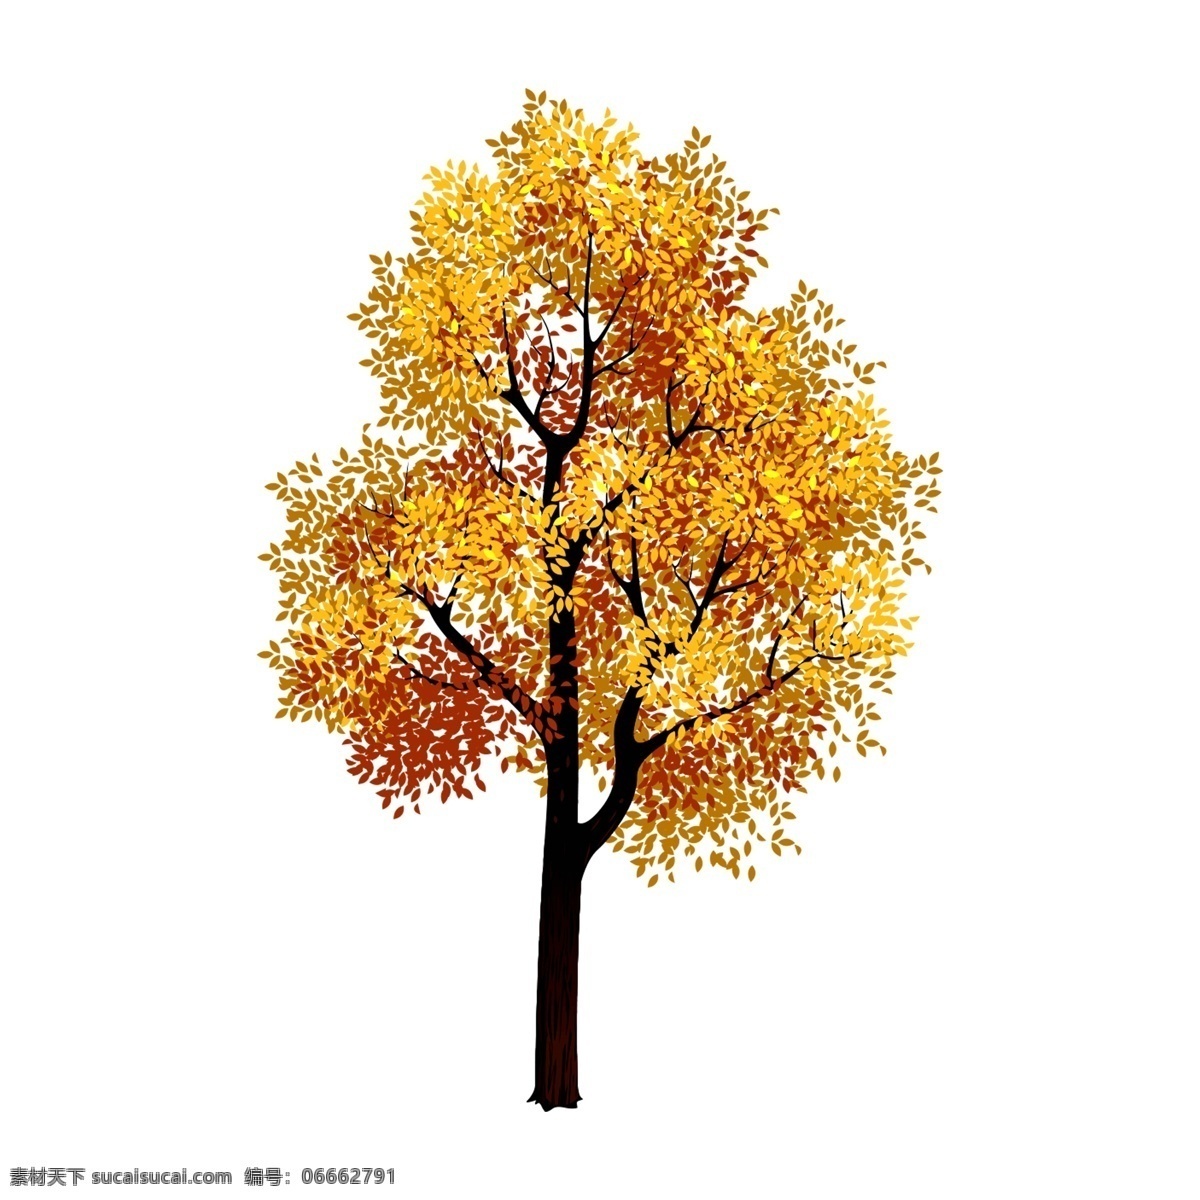 清新 水彩 秋季 树木 卡通 透明 秋叶 枫叶 黄色 透明素材 秋天元素 落叶元素 png免抠图